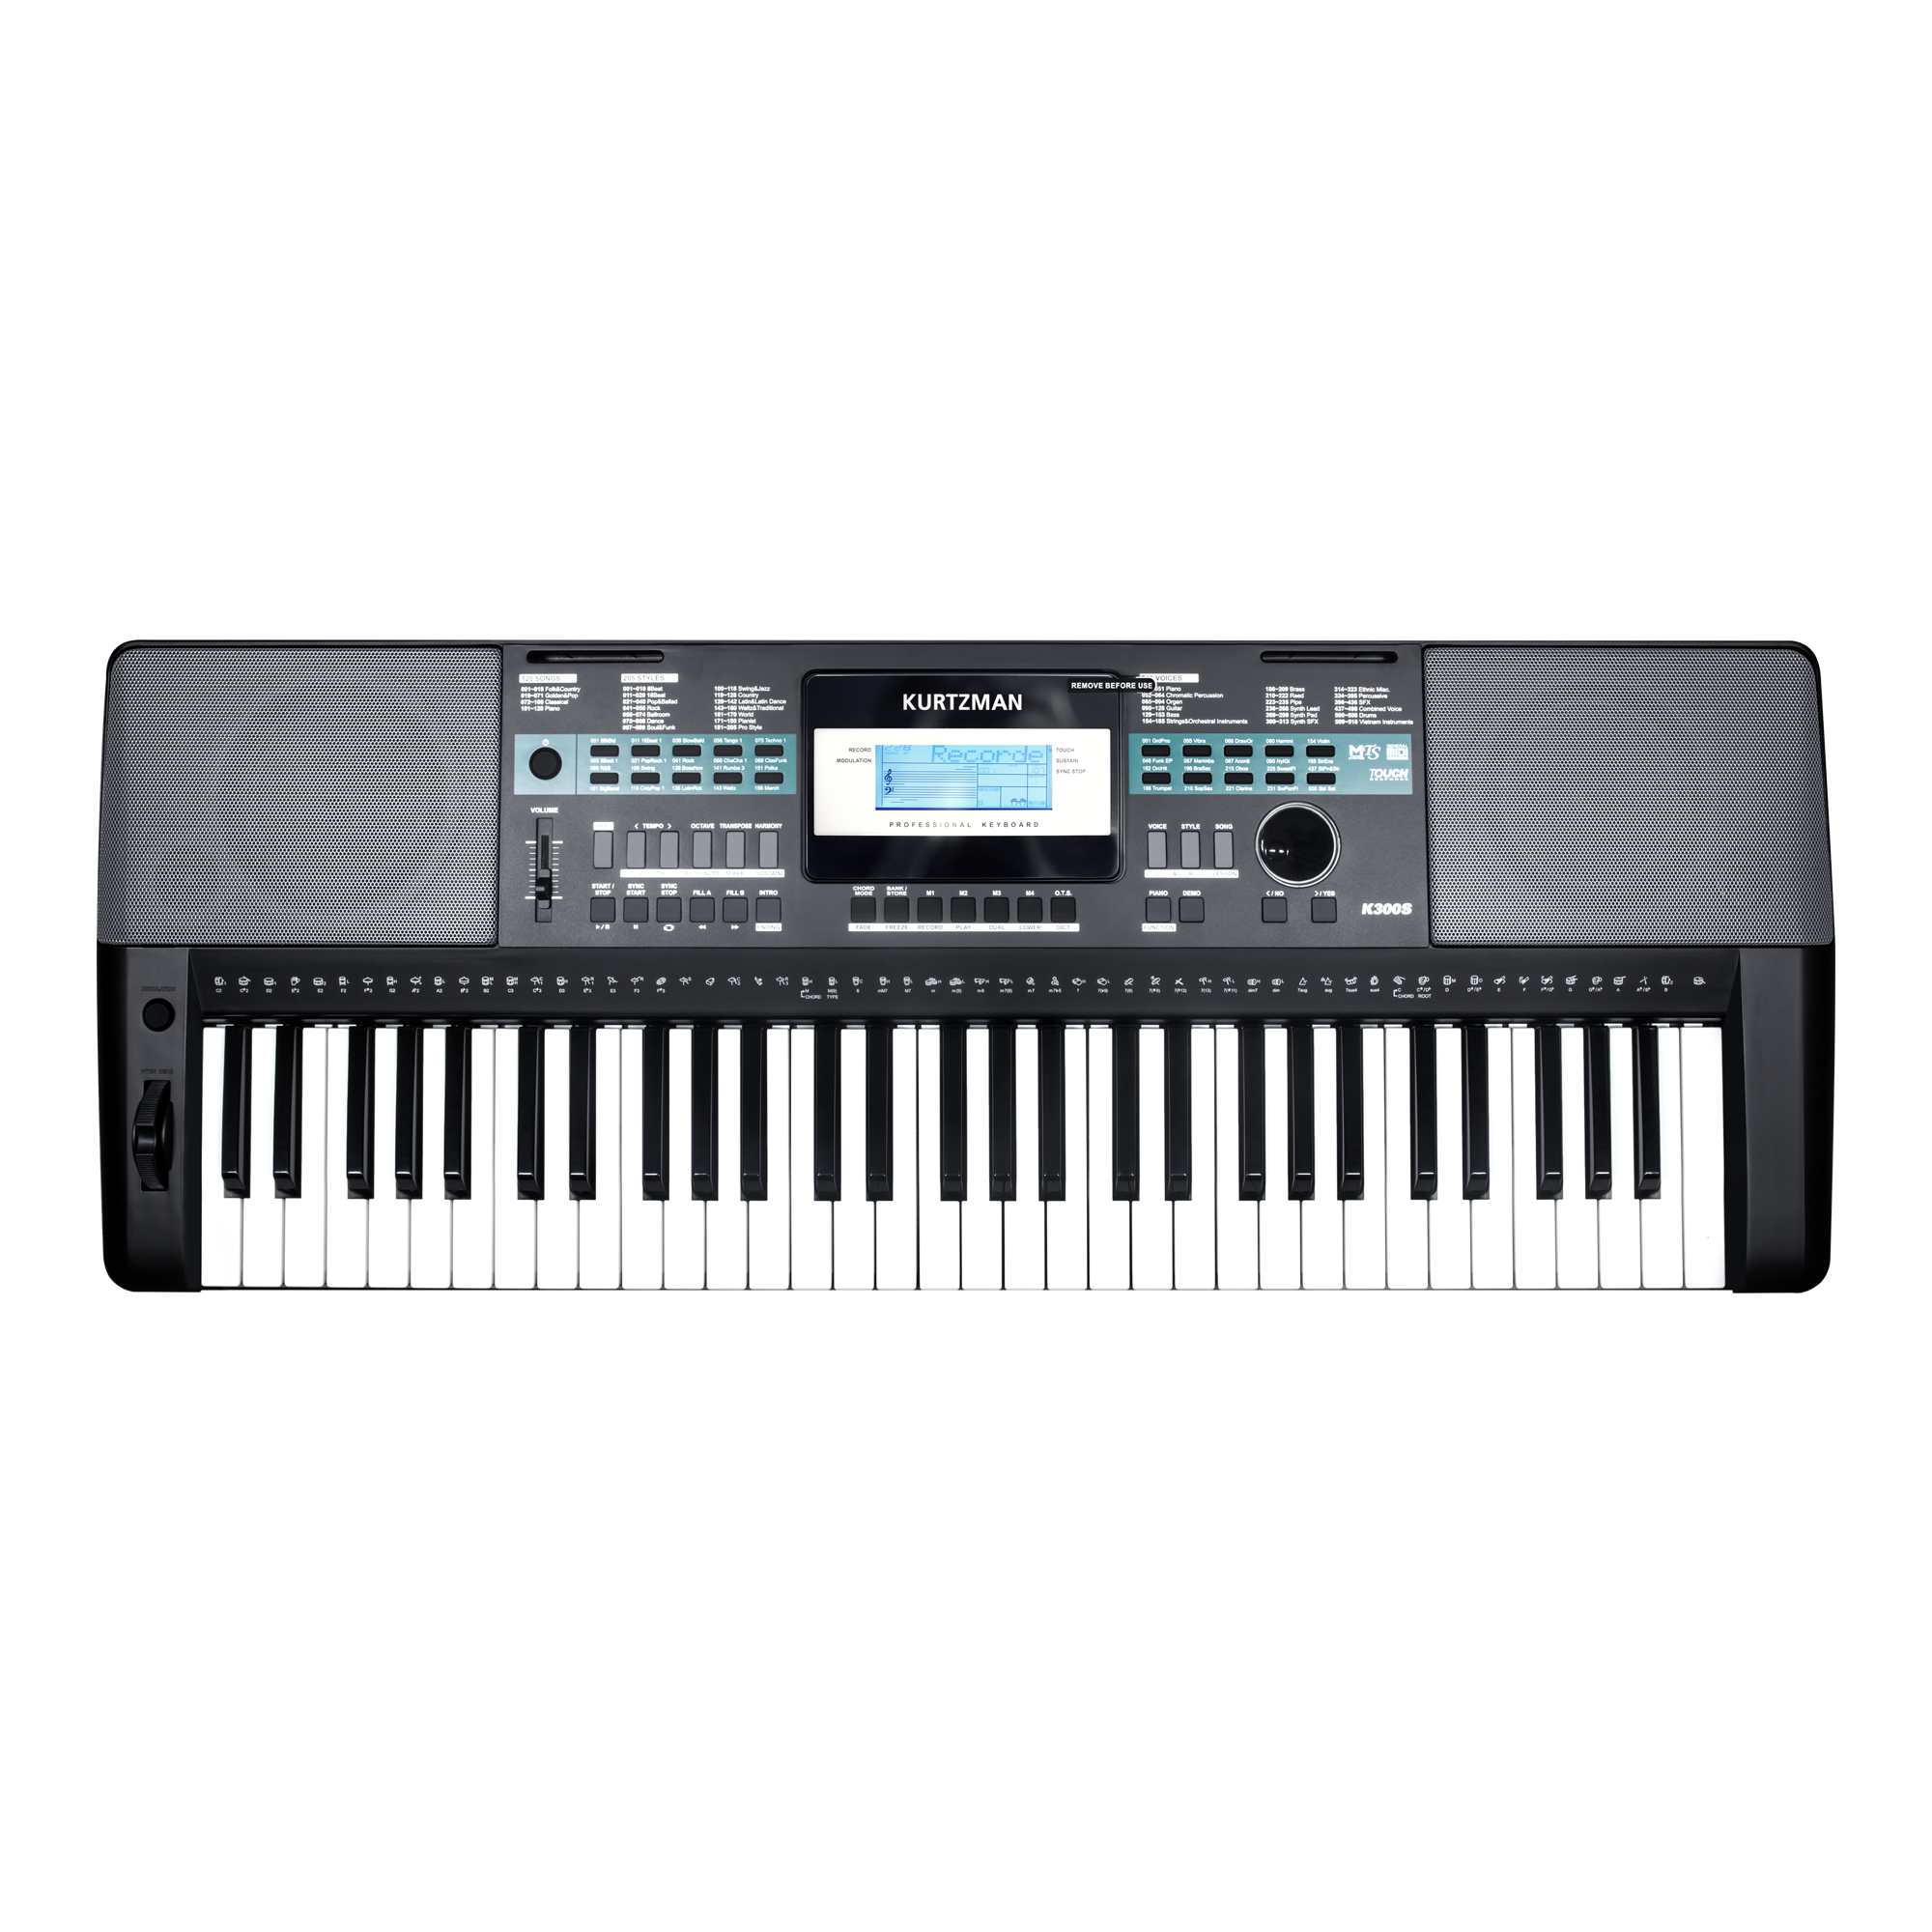 Đàn Organ điện tử, Portable Keyboard - Kzm Kurtzman K300S - Accompaniment Keyboard, Màu đen (BL) - Hàng chính hãng